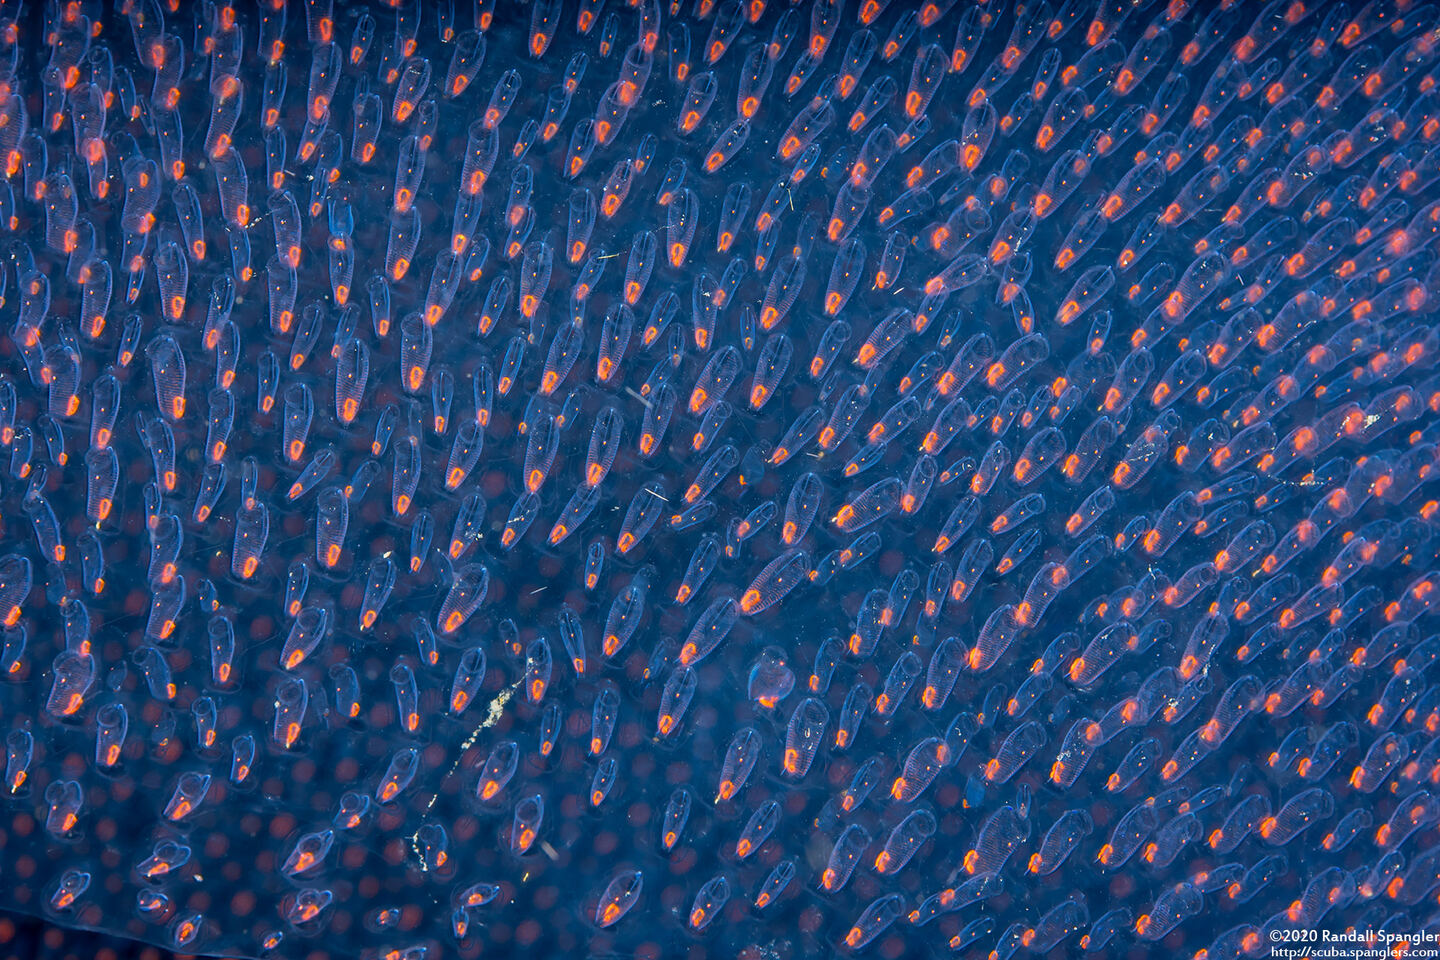 Pyrosoma atlanticum (Pyrosome); Close up of individual tunicates